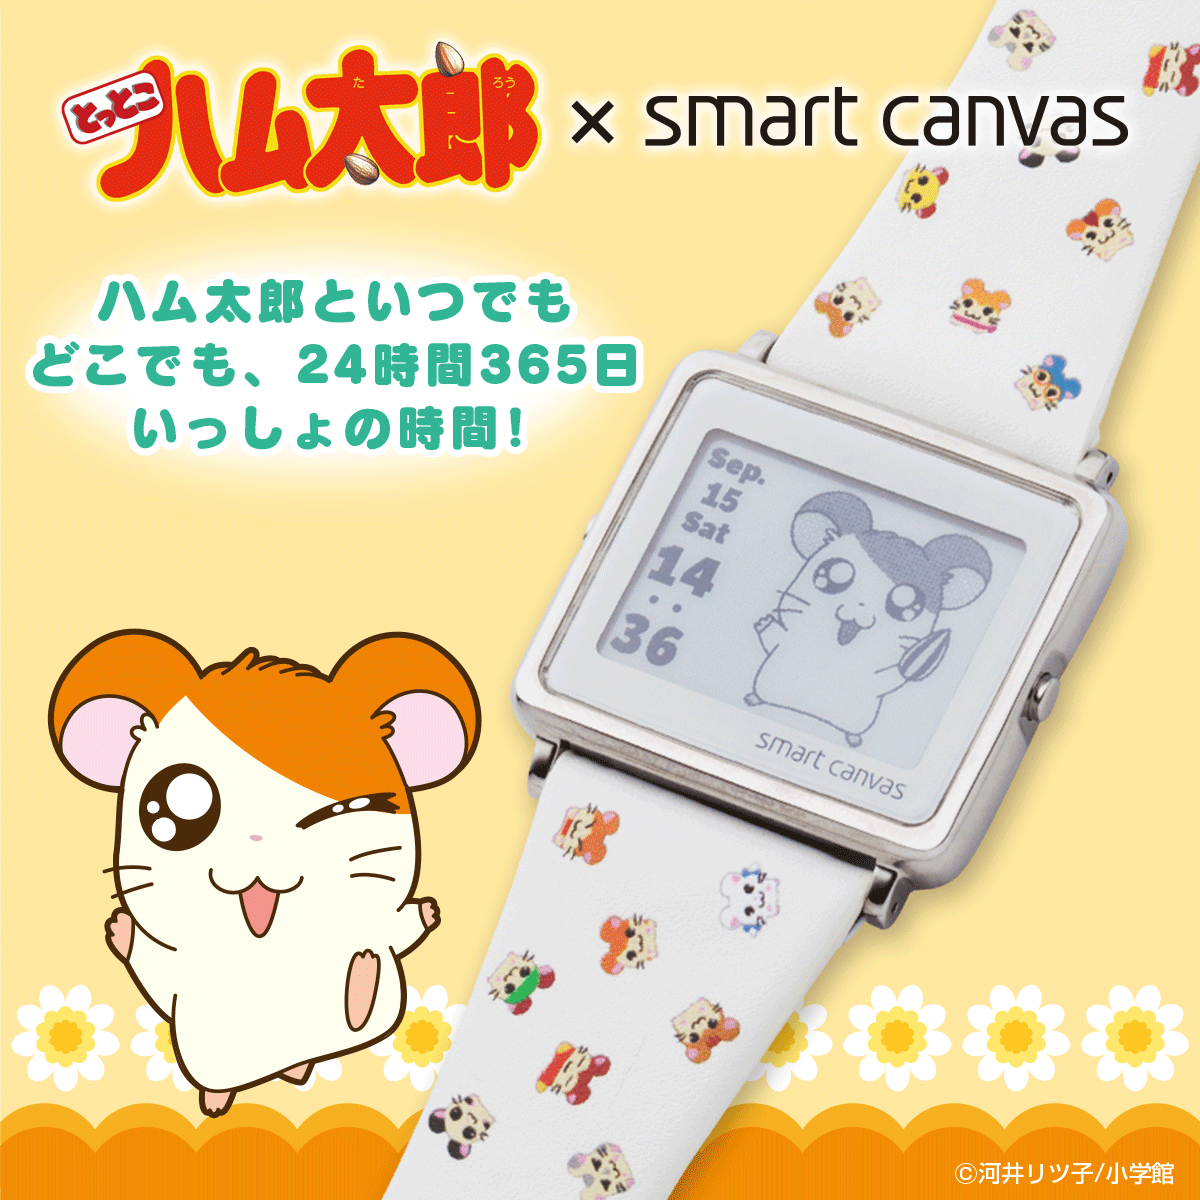 とっとこハム太郎 Smart Canvas スマートキャンバス デジタル腕時計 趣味 コレクション プレミアムバンダイ公式通販